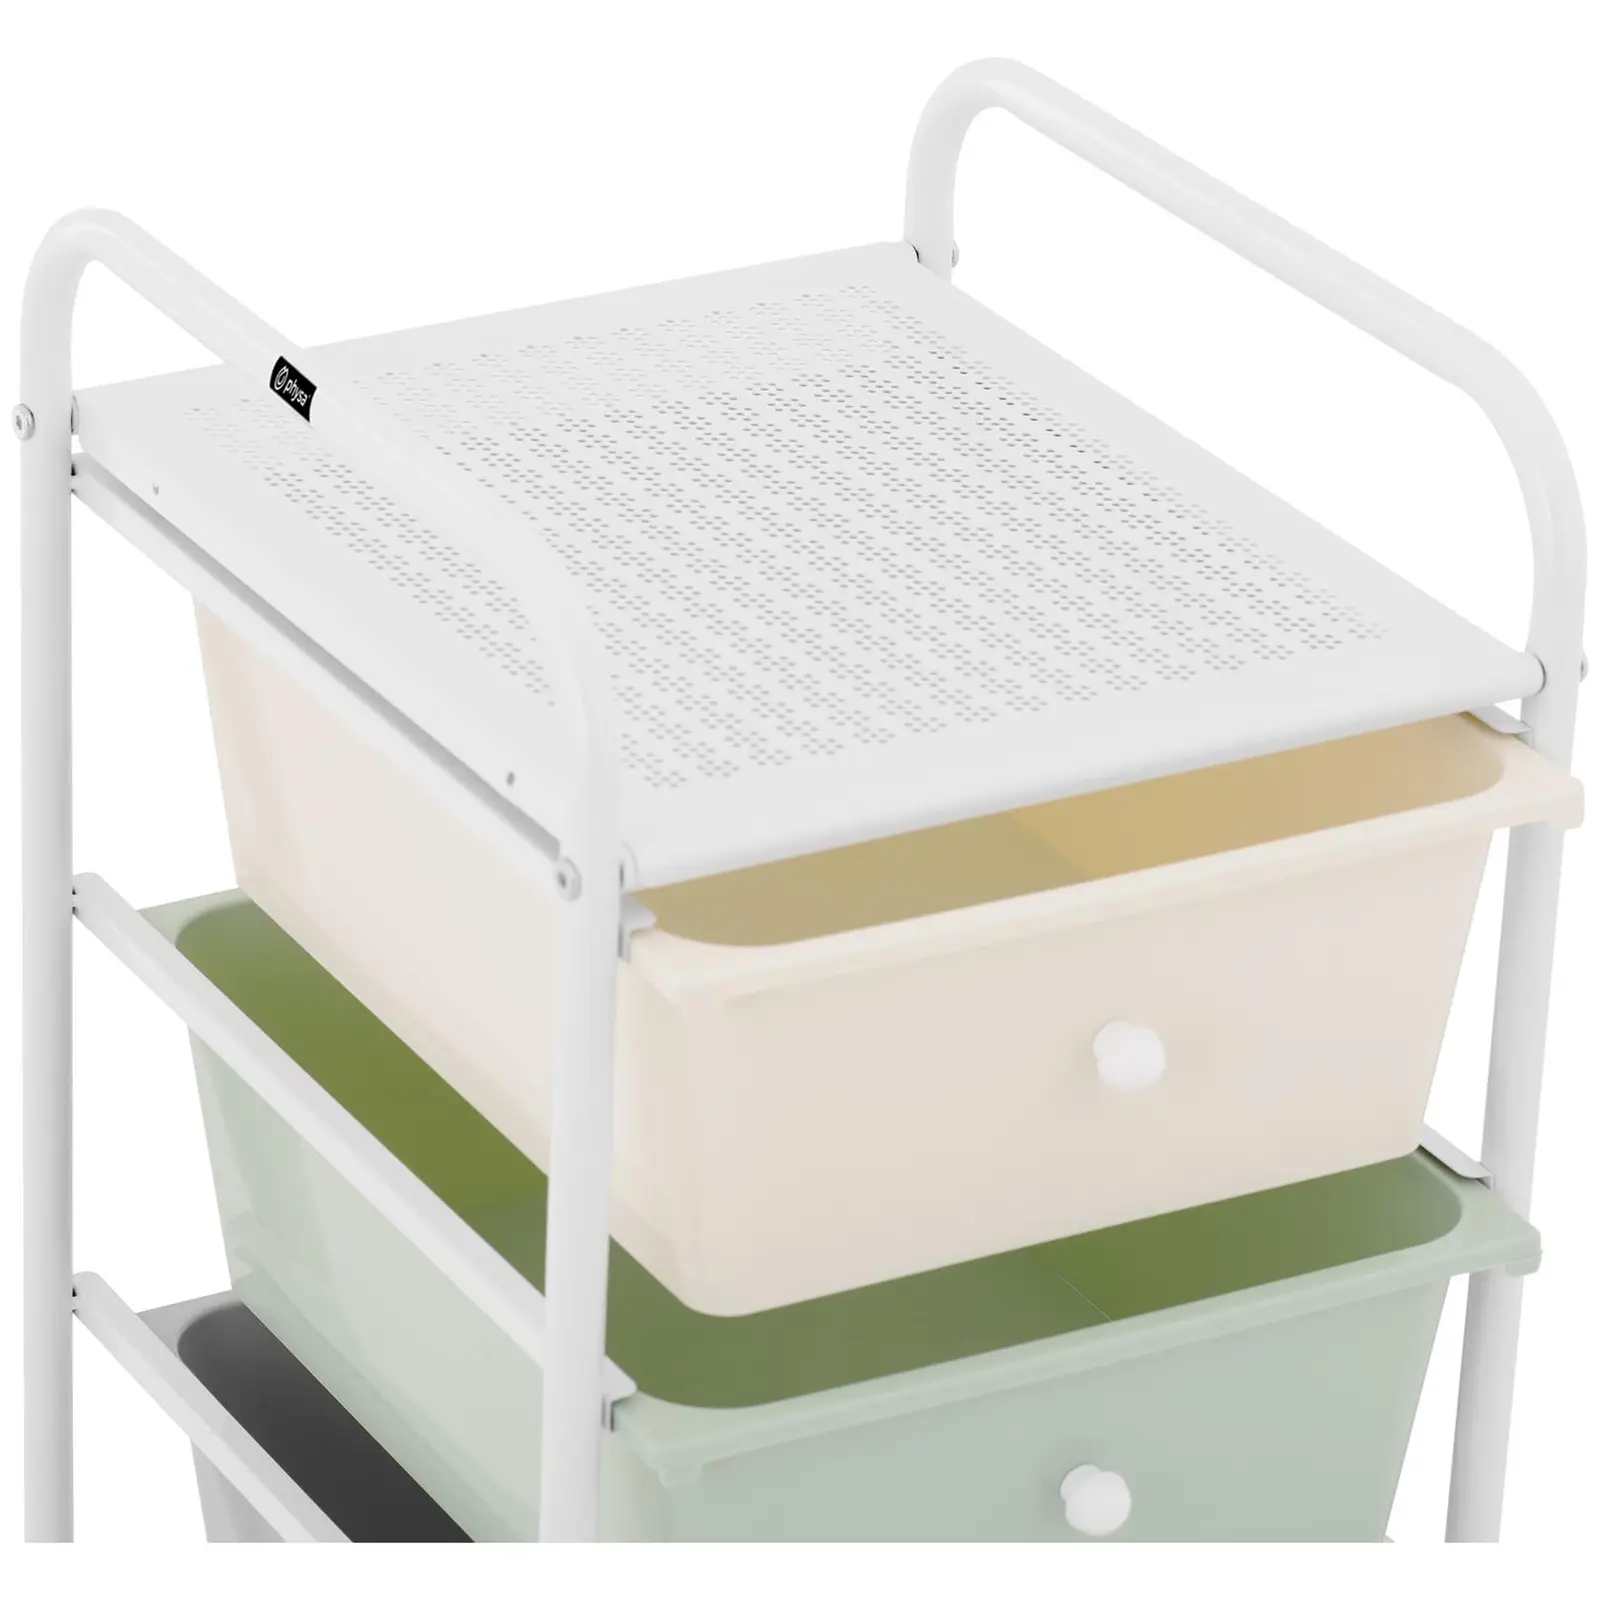 Korivaunu - kylpylä - 4 laatikkoa - vihreä/harmaa/vaaleanpunainen/kermanvärinen